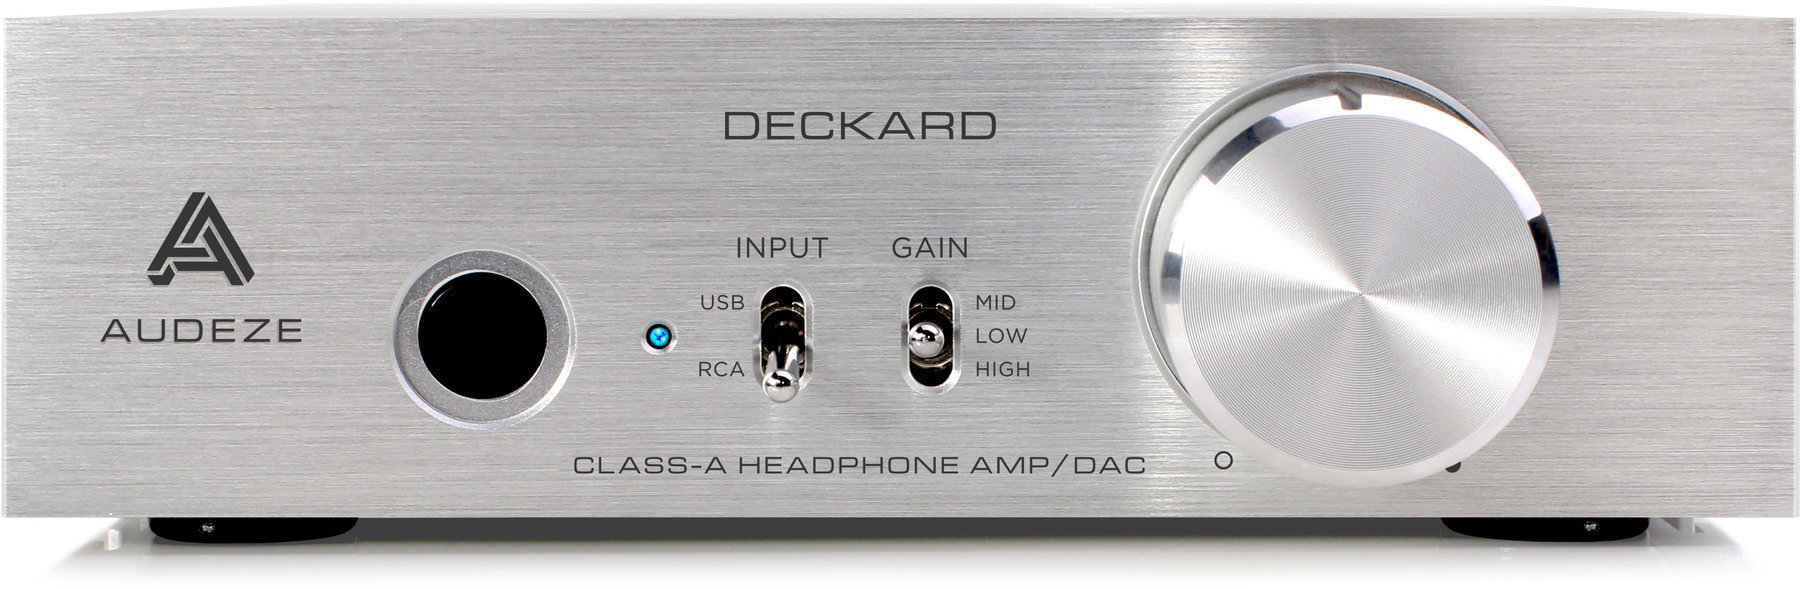 Hi-Fi Amplificateurs pour casques Audeze Deckard